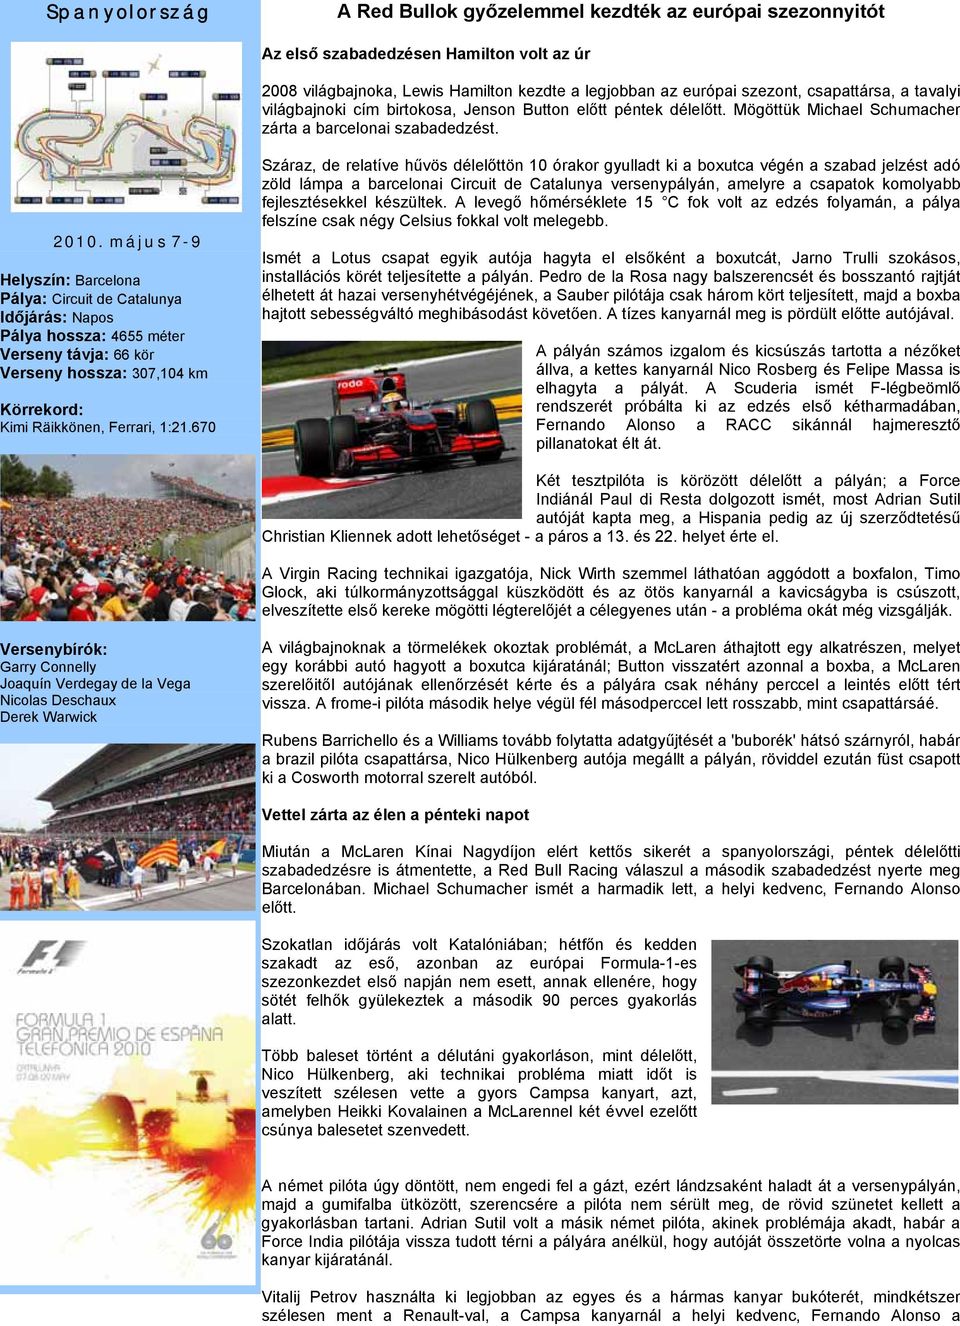 május 7-9 Helyszín: Barcelona Pálya: Circuit de Catalunya Időjárás: Napos Pálya hossza: 4655 méter Verseny távja: 66 kör Verseny hossza: 307,104 km Körrekord: Kimi Räikkönen, Ferrari, 1:21.